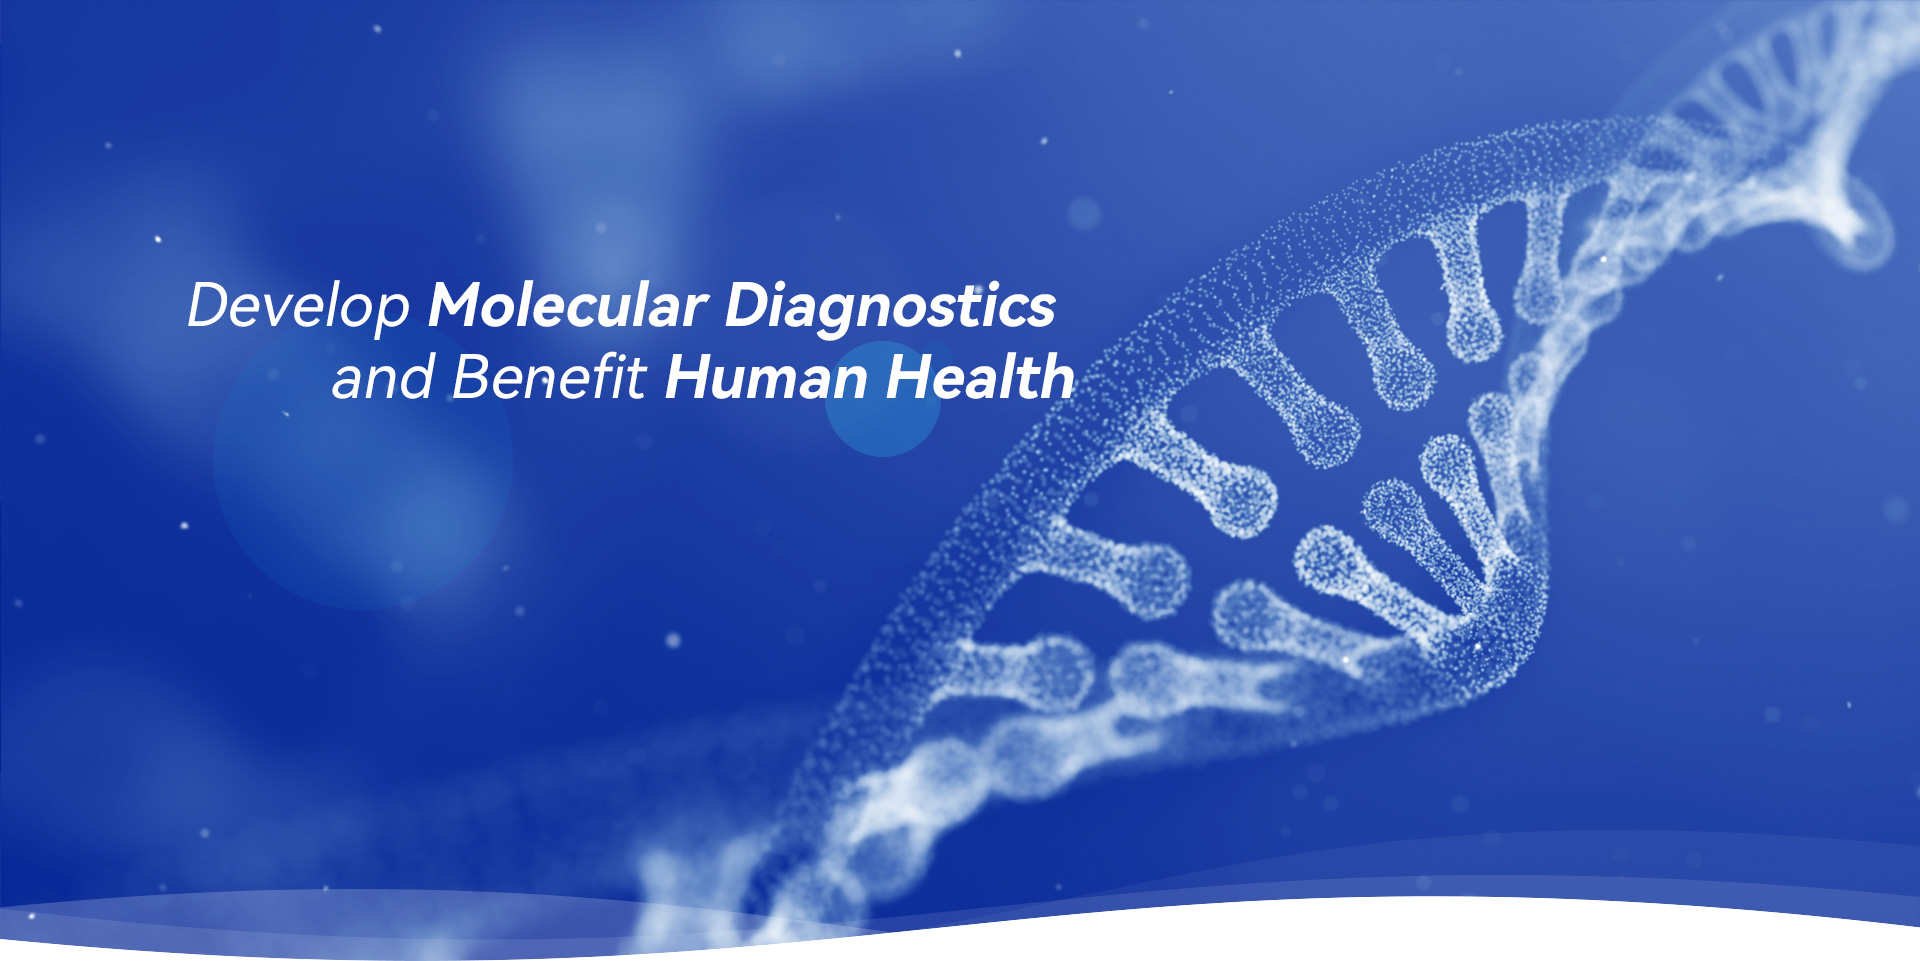 Develop Molecular Diagnostics and Benefit Human Health 2